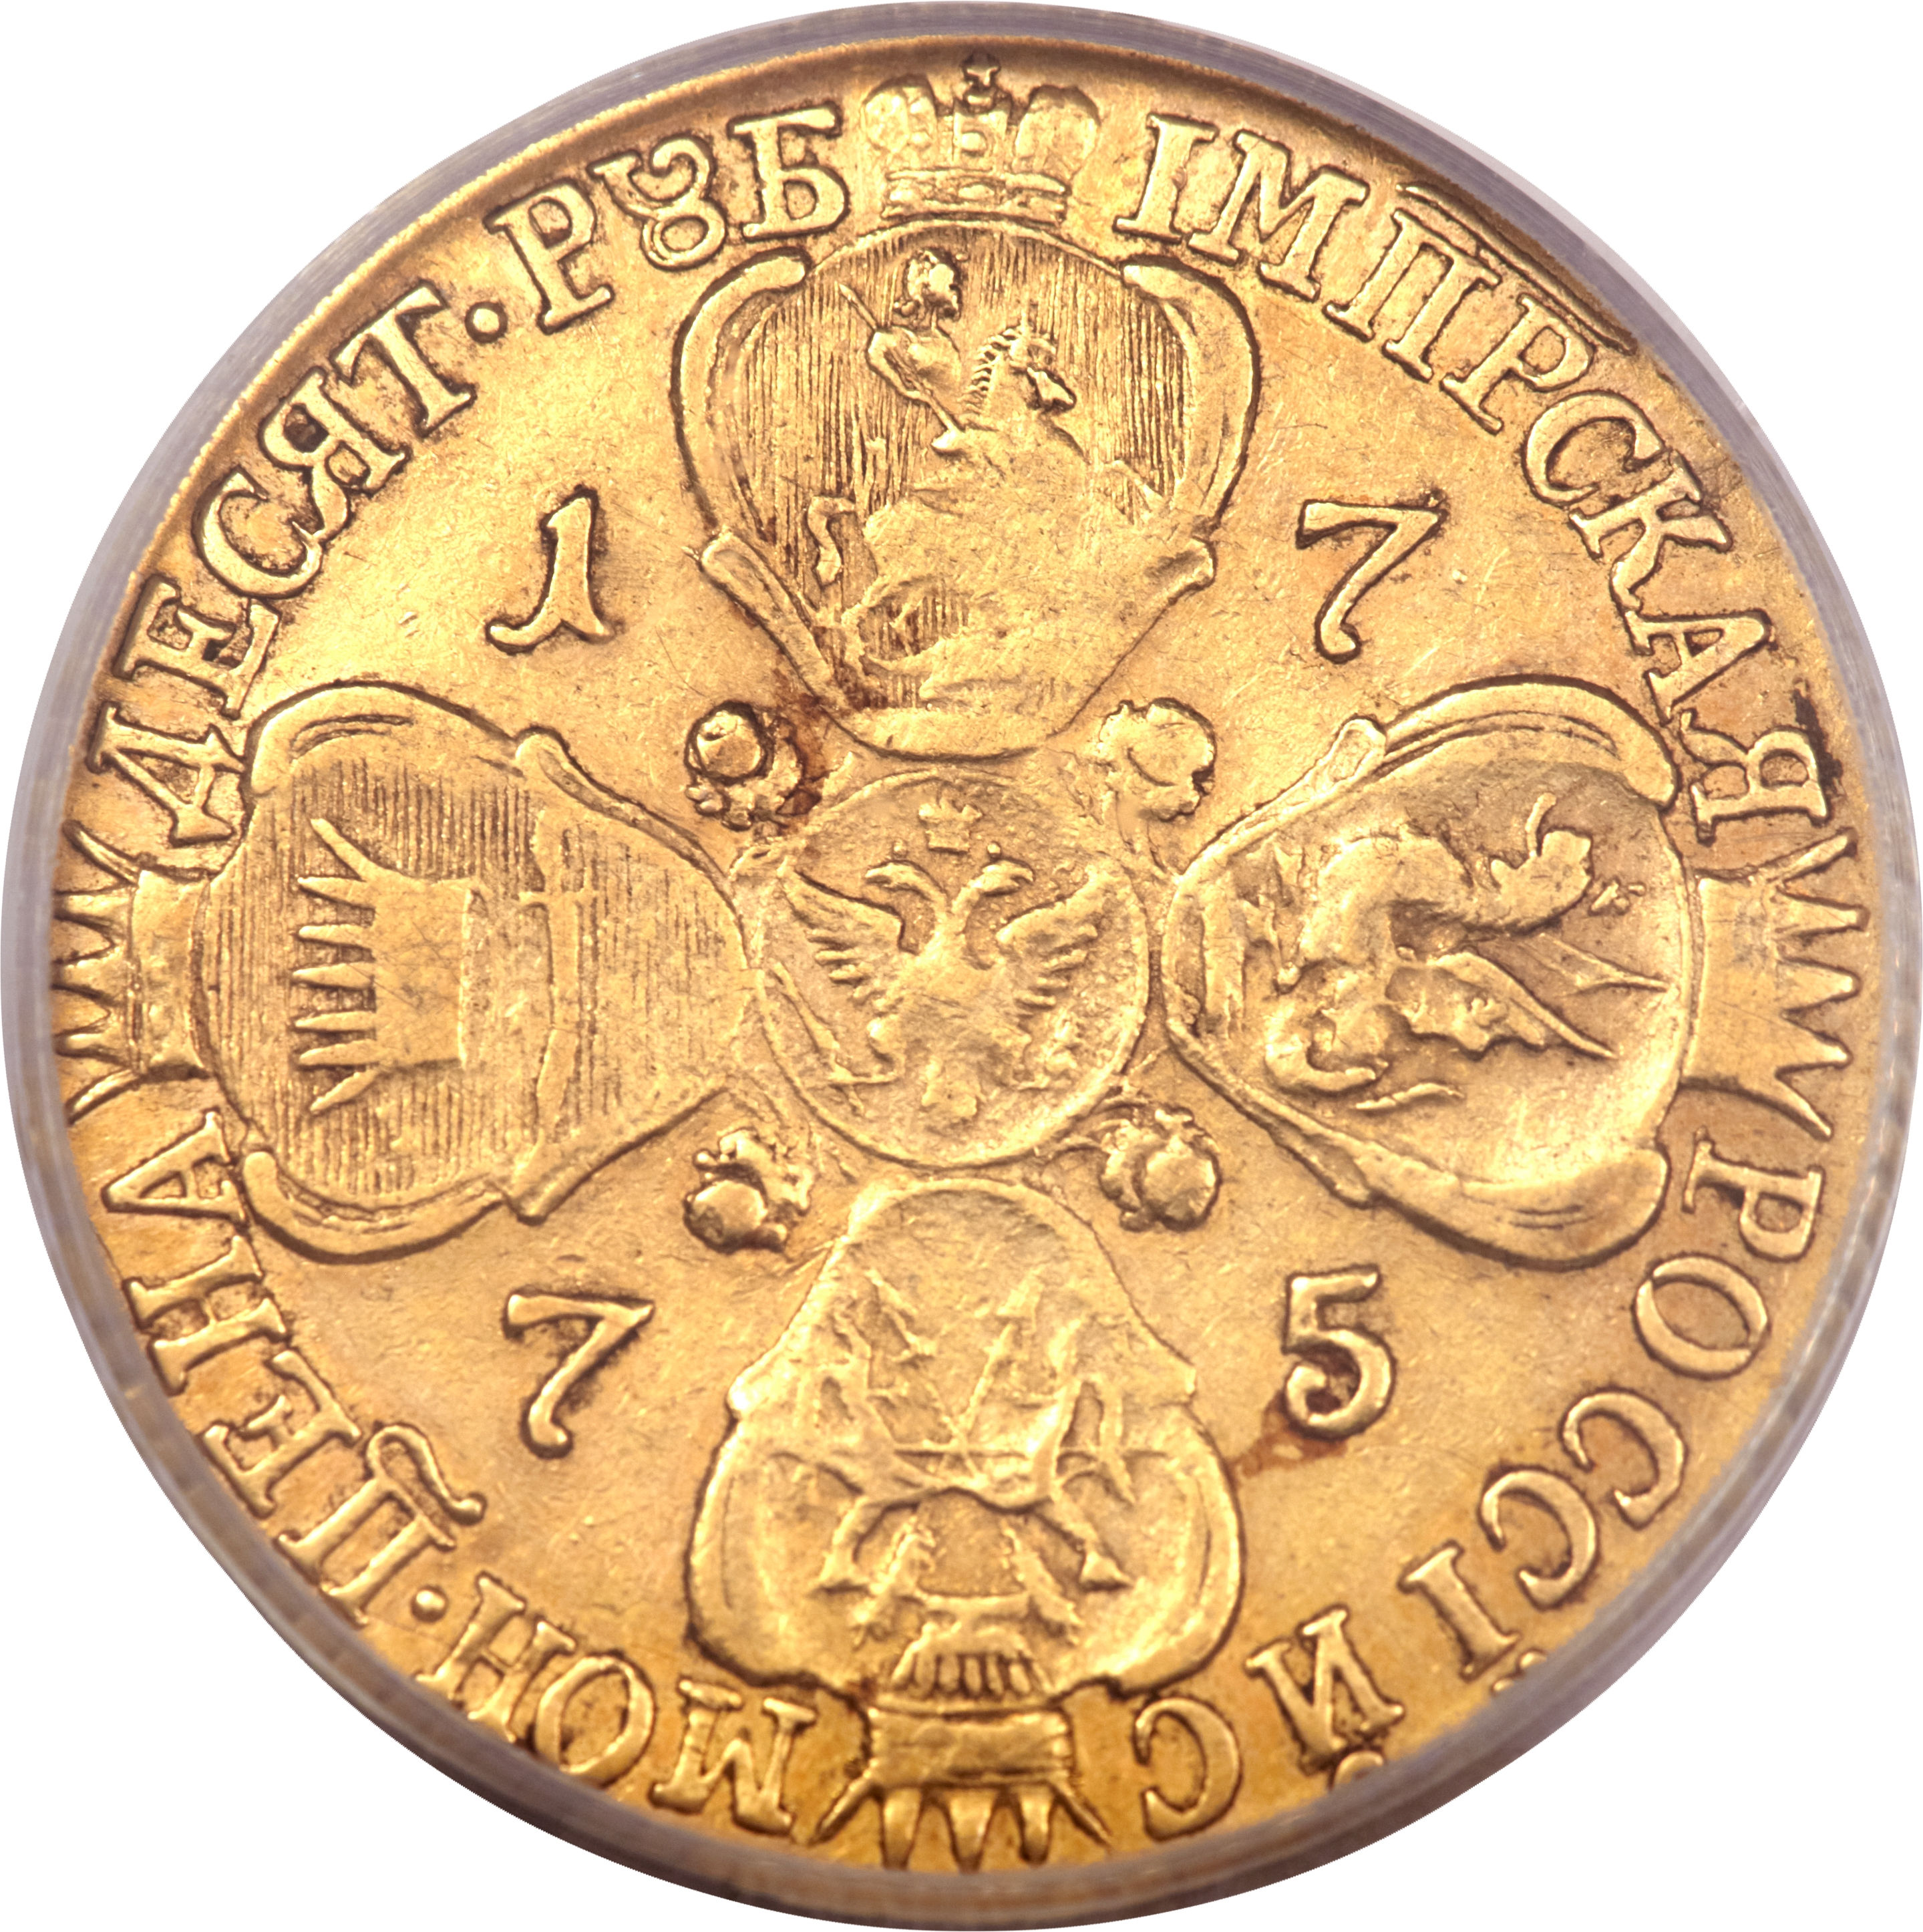 Цена золотой монеты 10 рублей. Золотые монеты Екатерины 2. Золотая монета Екатерины 2 10 рублей.